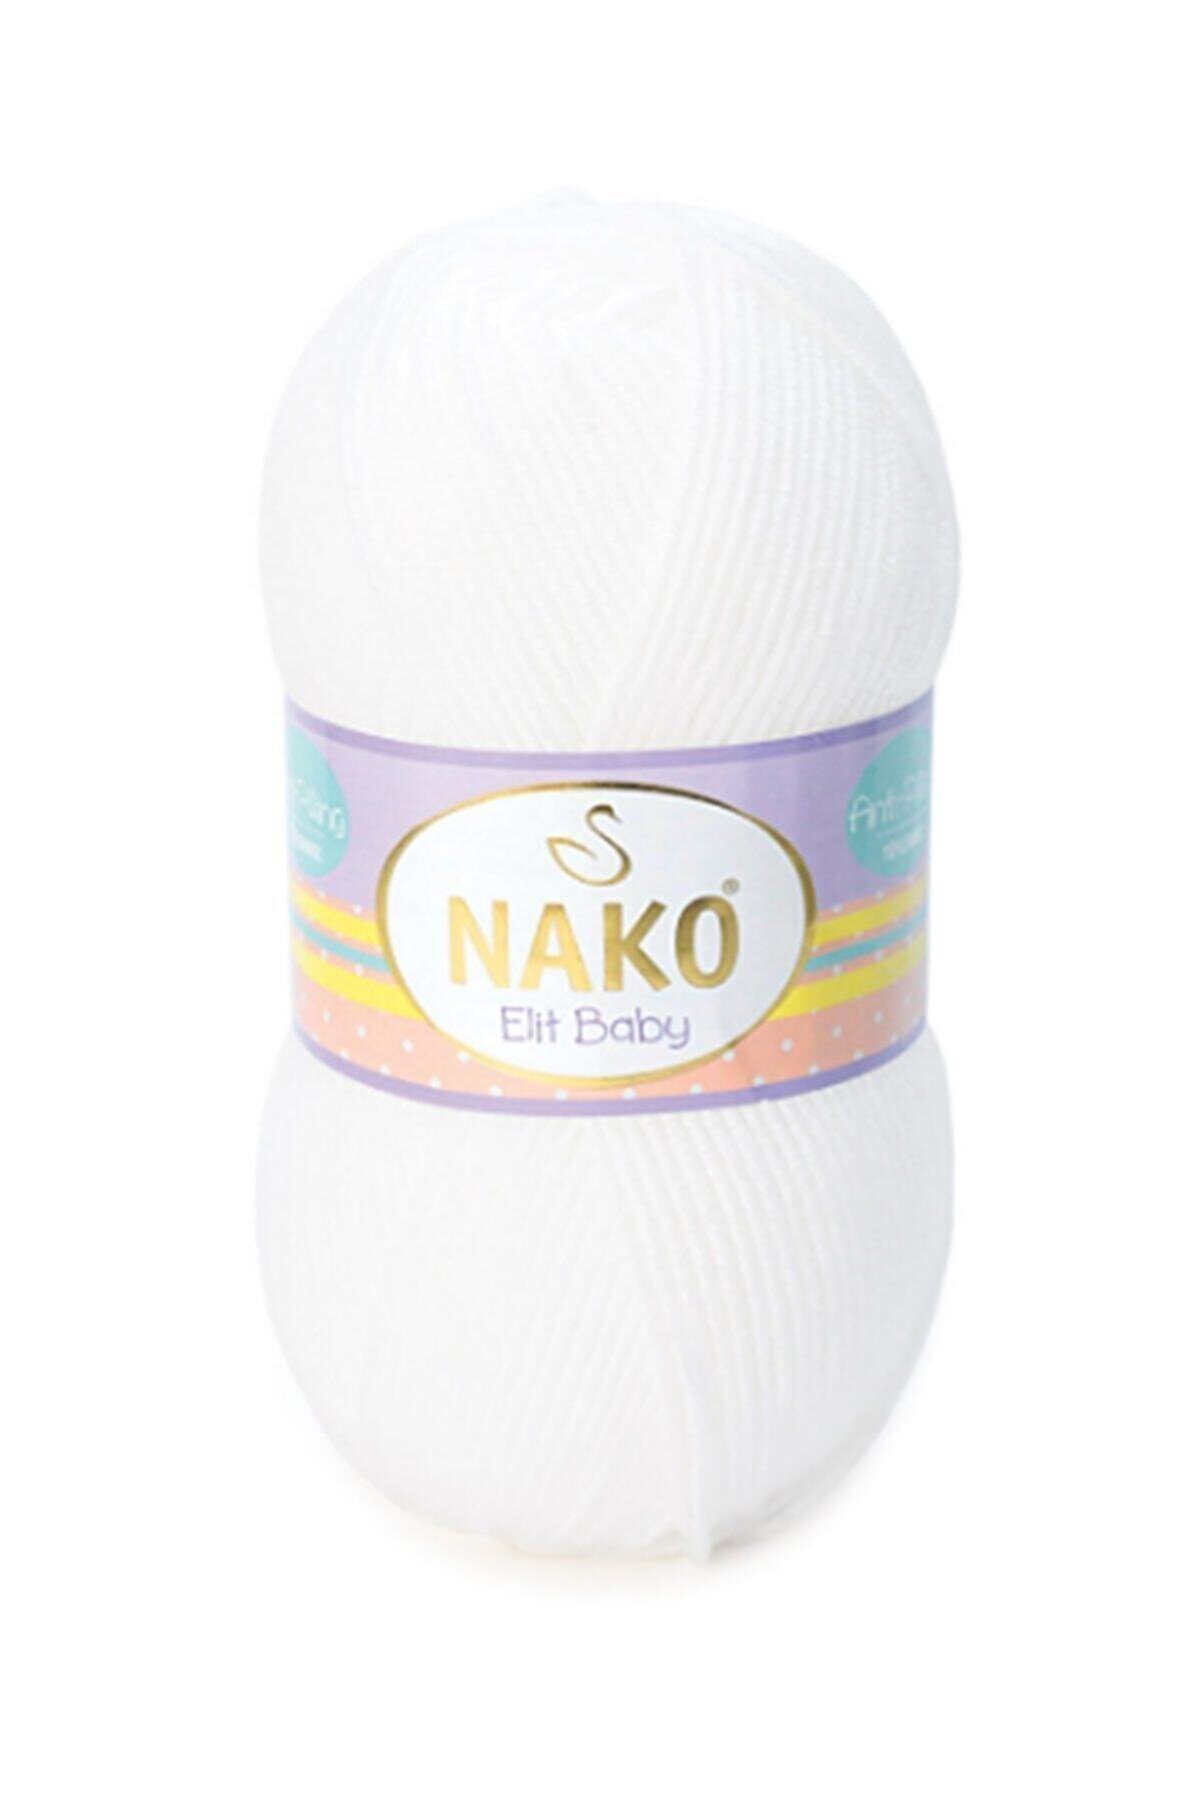 Nako Elit Baby Bebek Hırkası Kazak Yapmak Için Anti-pilling Acrylic 100 g 250 m 0208 | Tüylenmeyen Ip